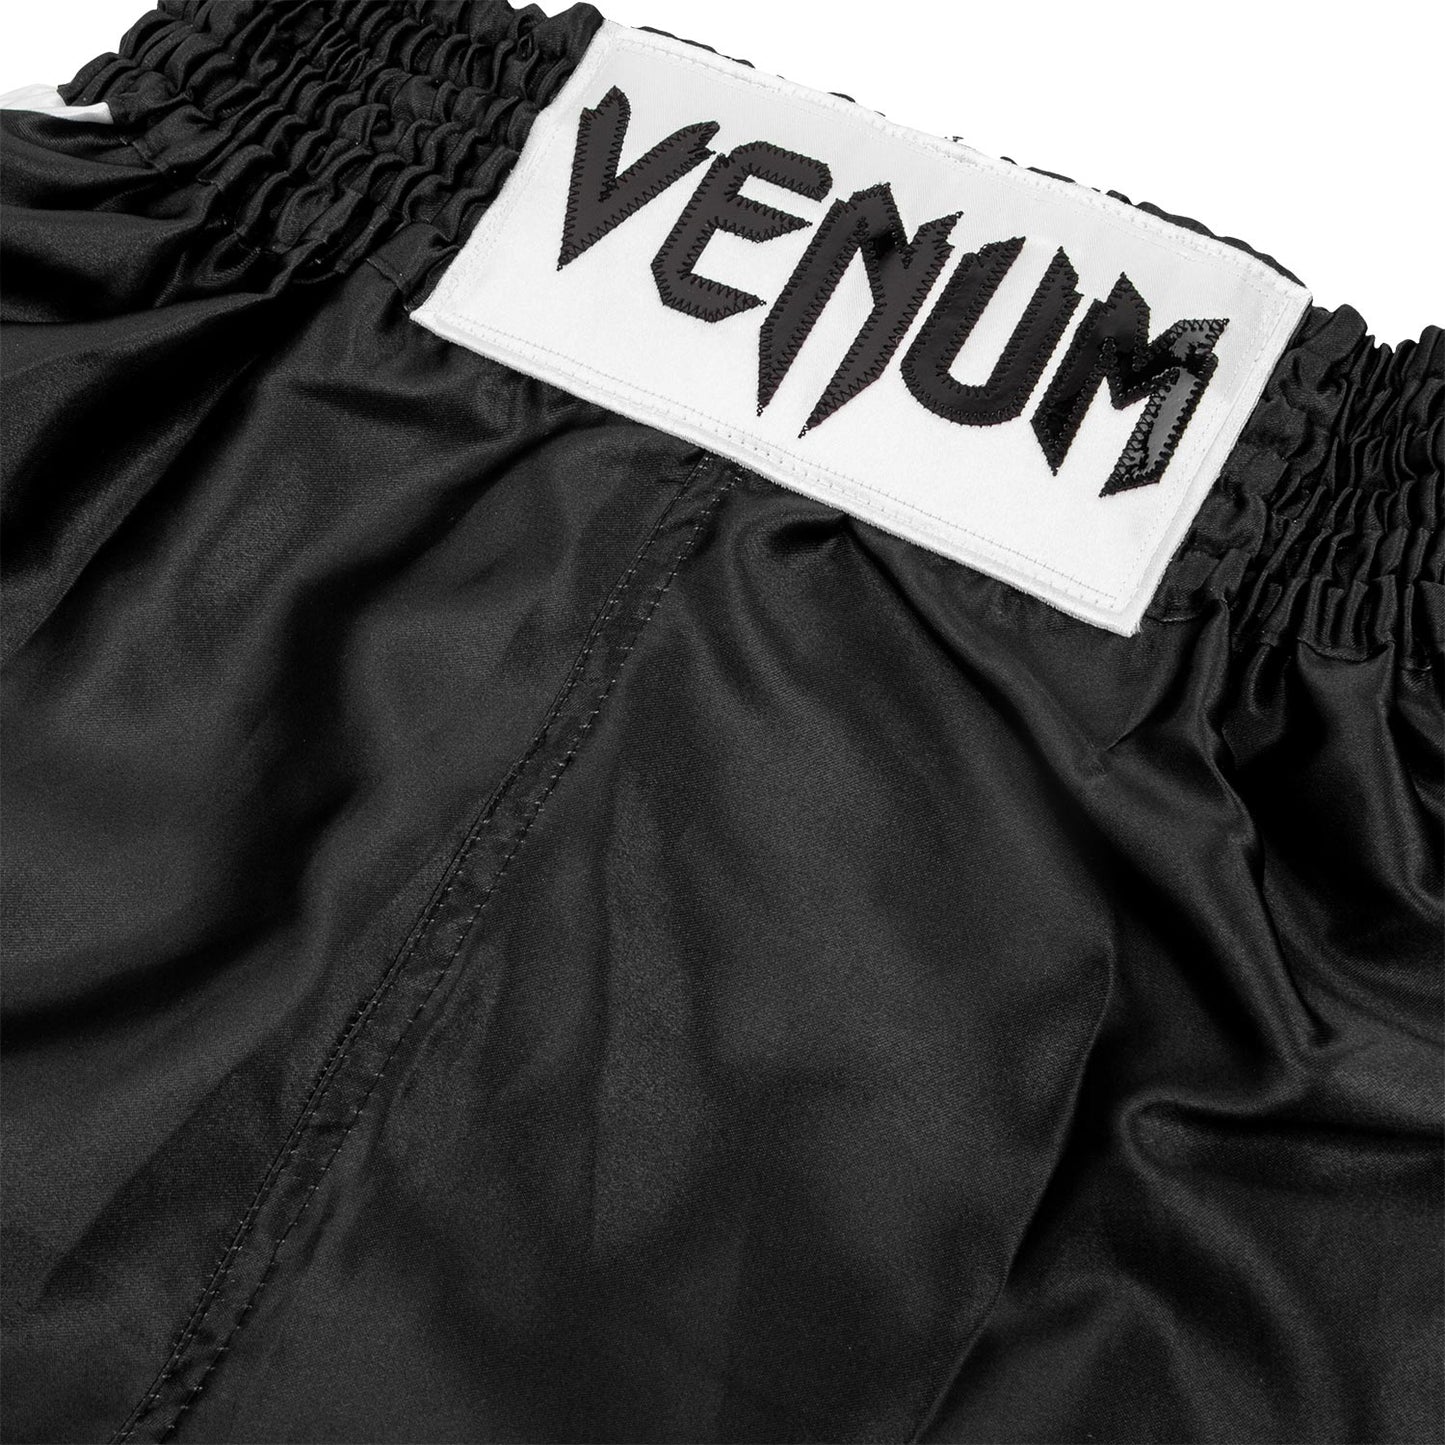 Venum Elite Kids Boxing Shorts - Black/White